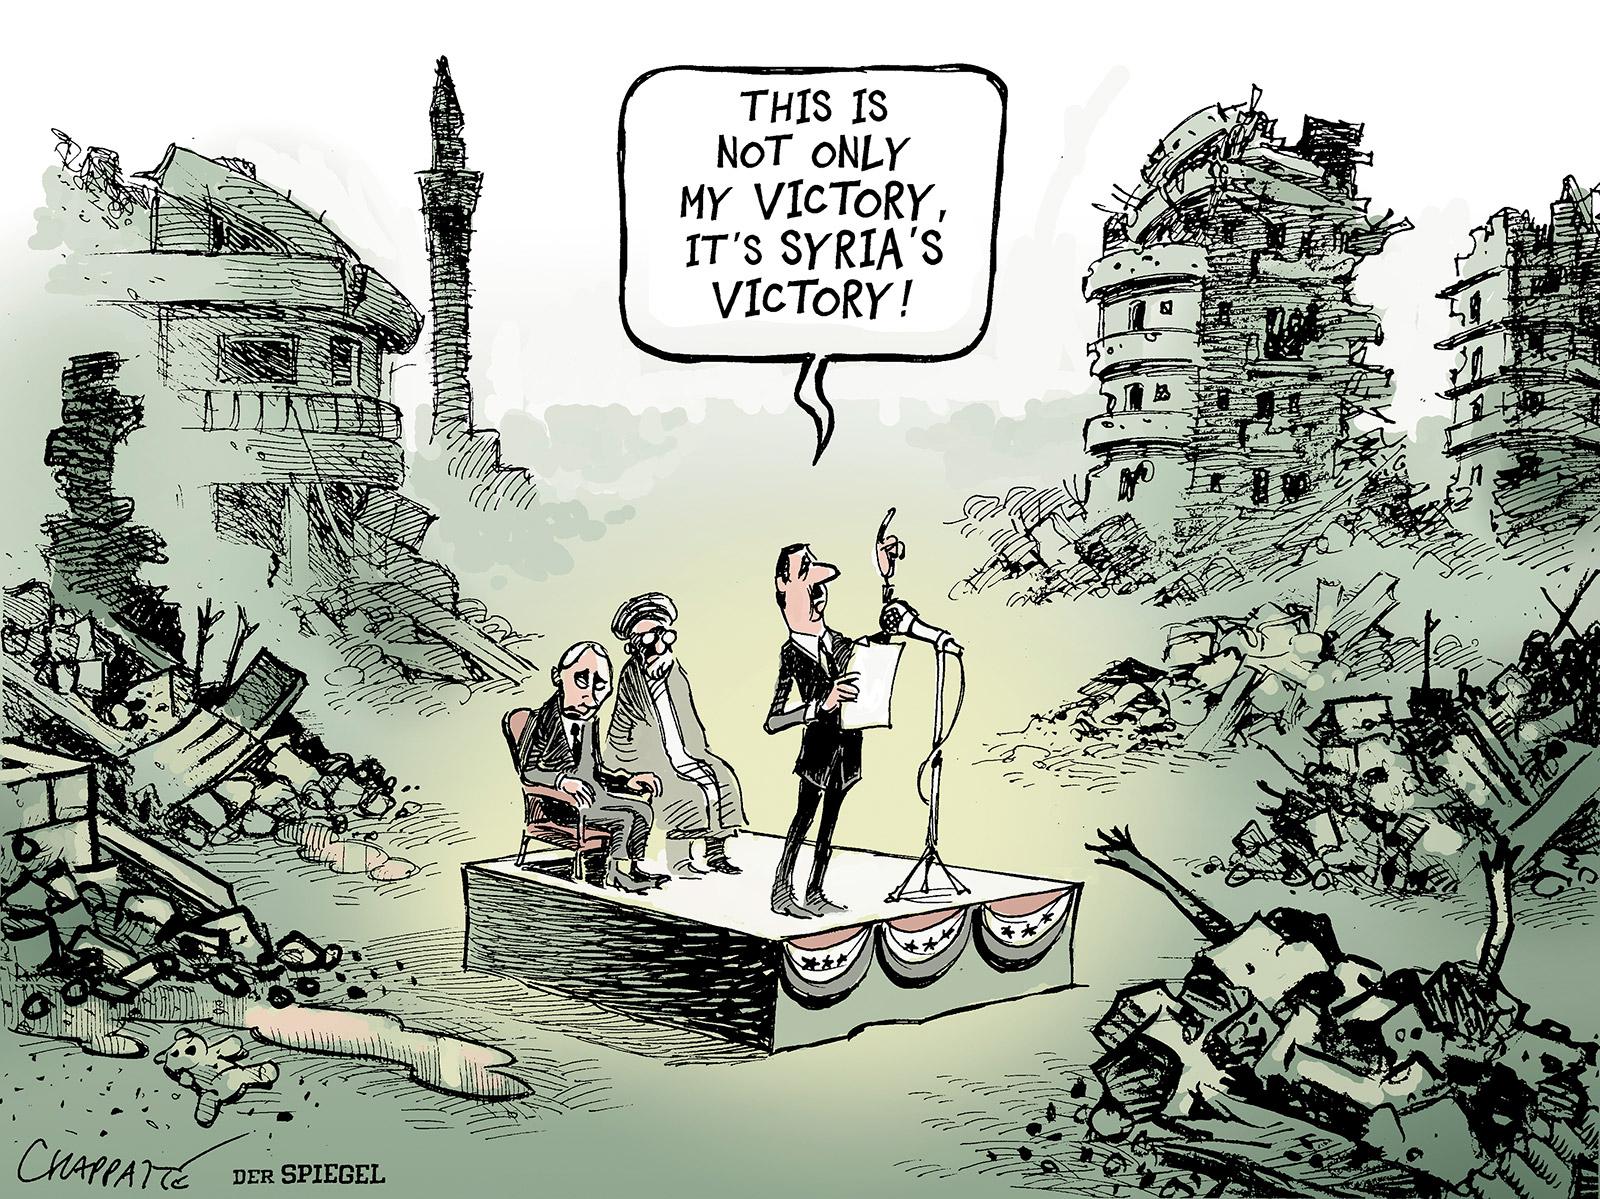 Assad's last battle